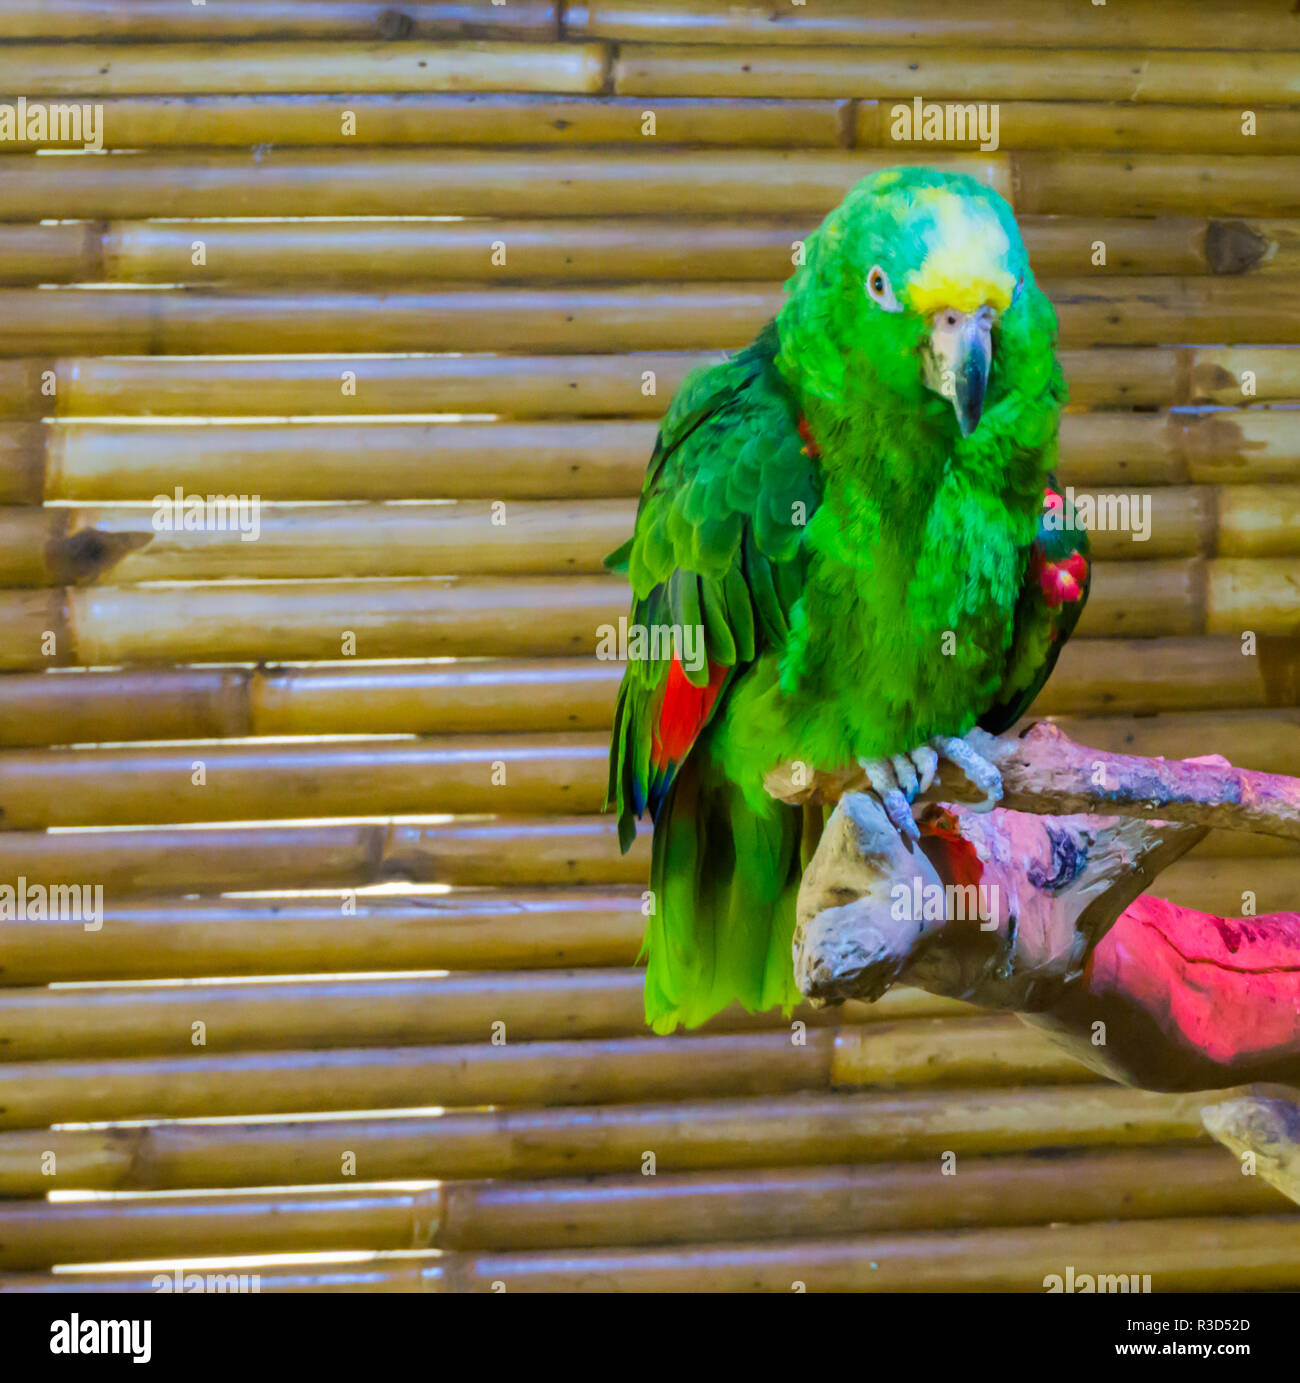 Lebendige Grün und bunt Gelb naped Amazon Parrot eine Nahaufnahme Tier  portrait einer gefährdeten Vogel Stockfotografie - Alamy